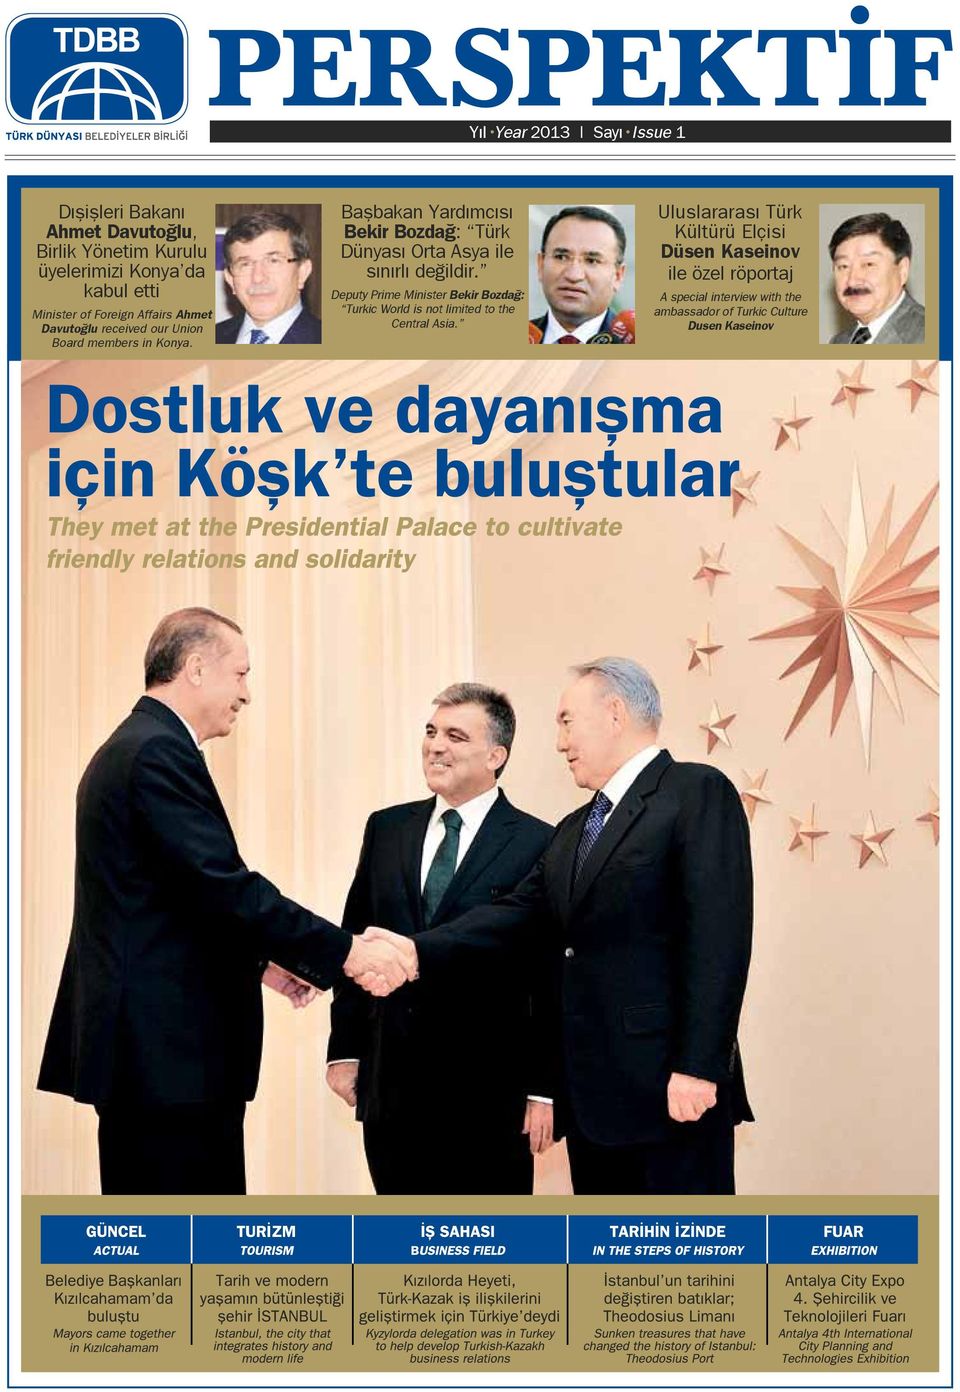 Başbakan Yardımcısı Bekir Bozdağ: Türk Dünyası Orta Asya ile sınırlı değildir.